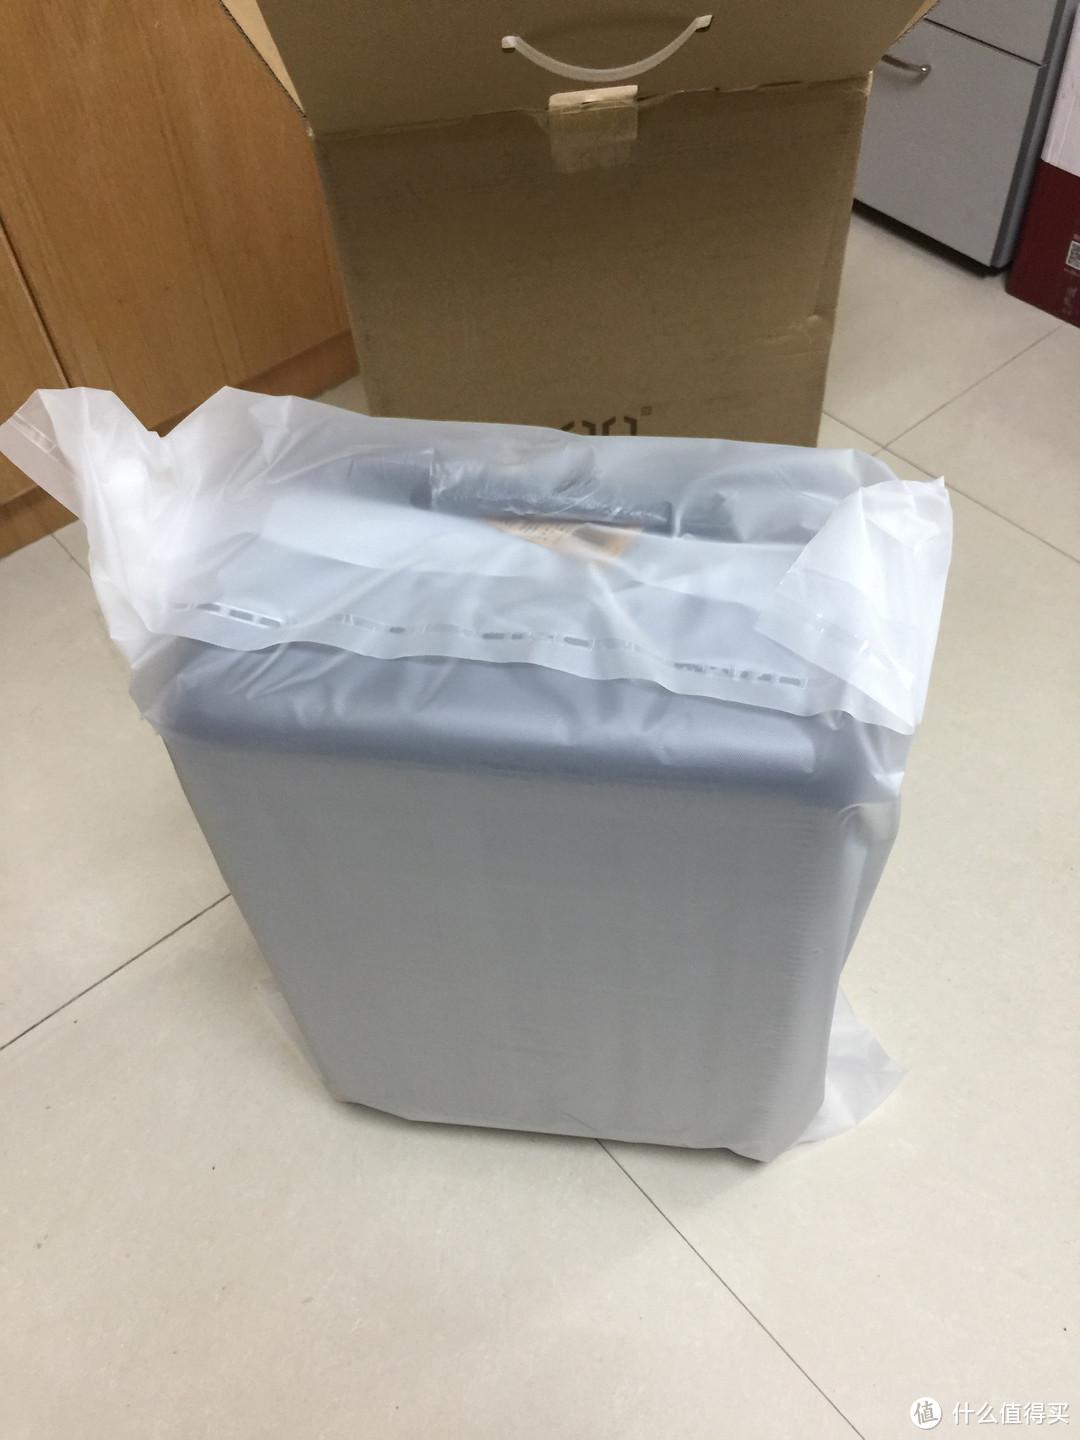 包裹箱子的塑料袋质感也很好，可以防止一般的摩擦刮花箱体表面。